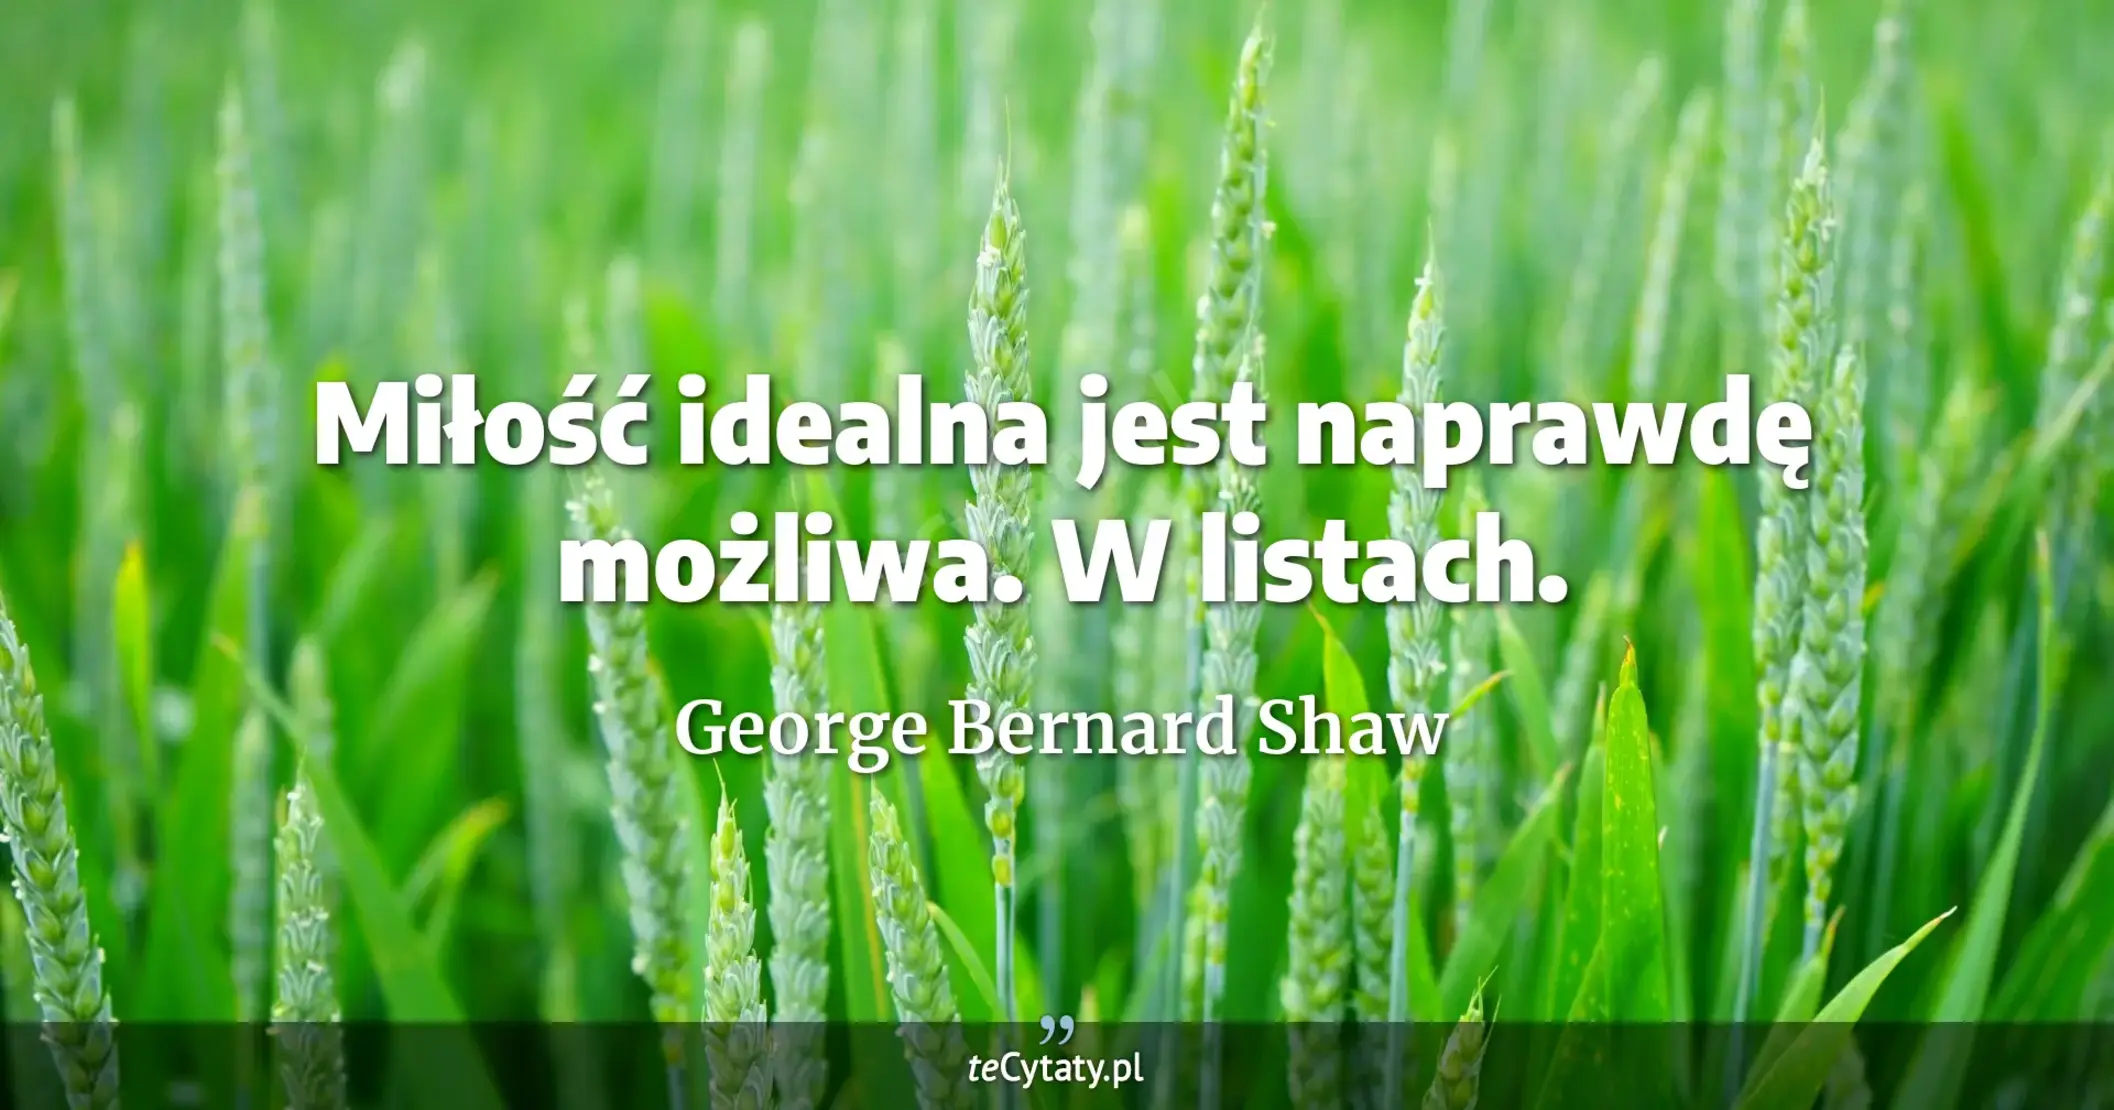 Miłość idealna jest naprawdę możliwa. W listach. - George Bernard Shaw